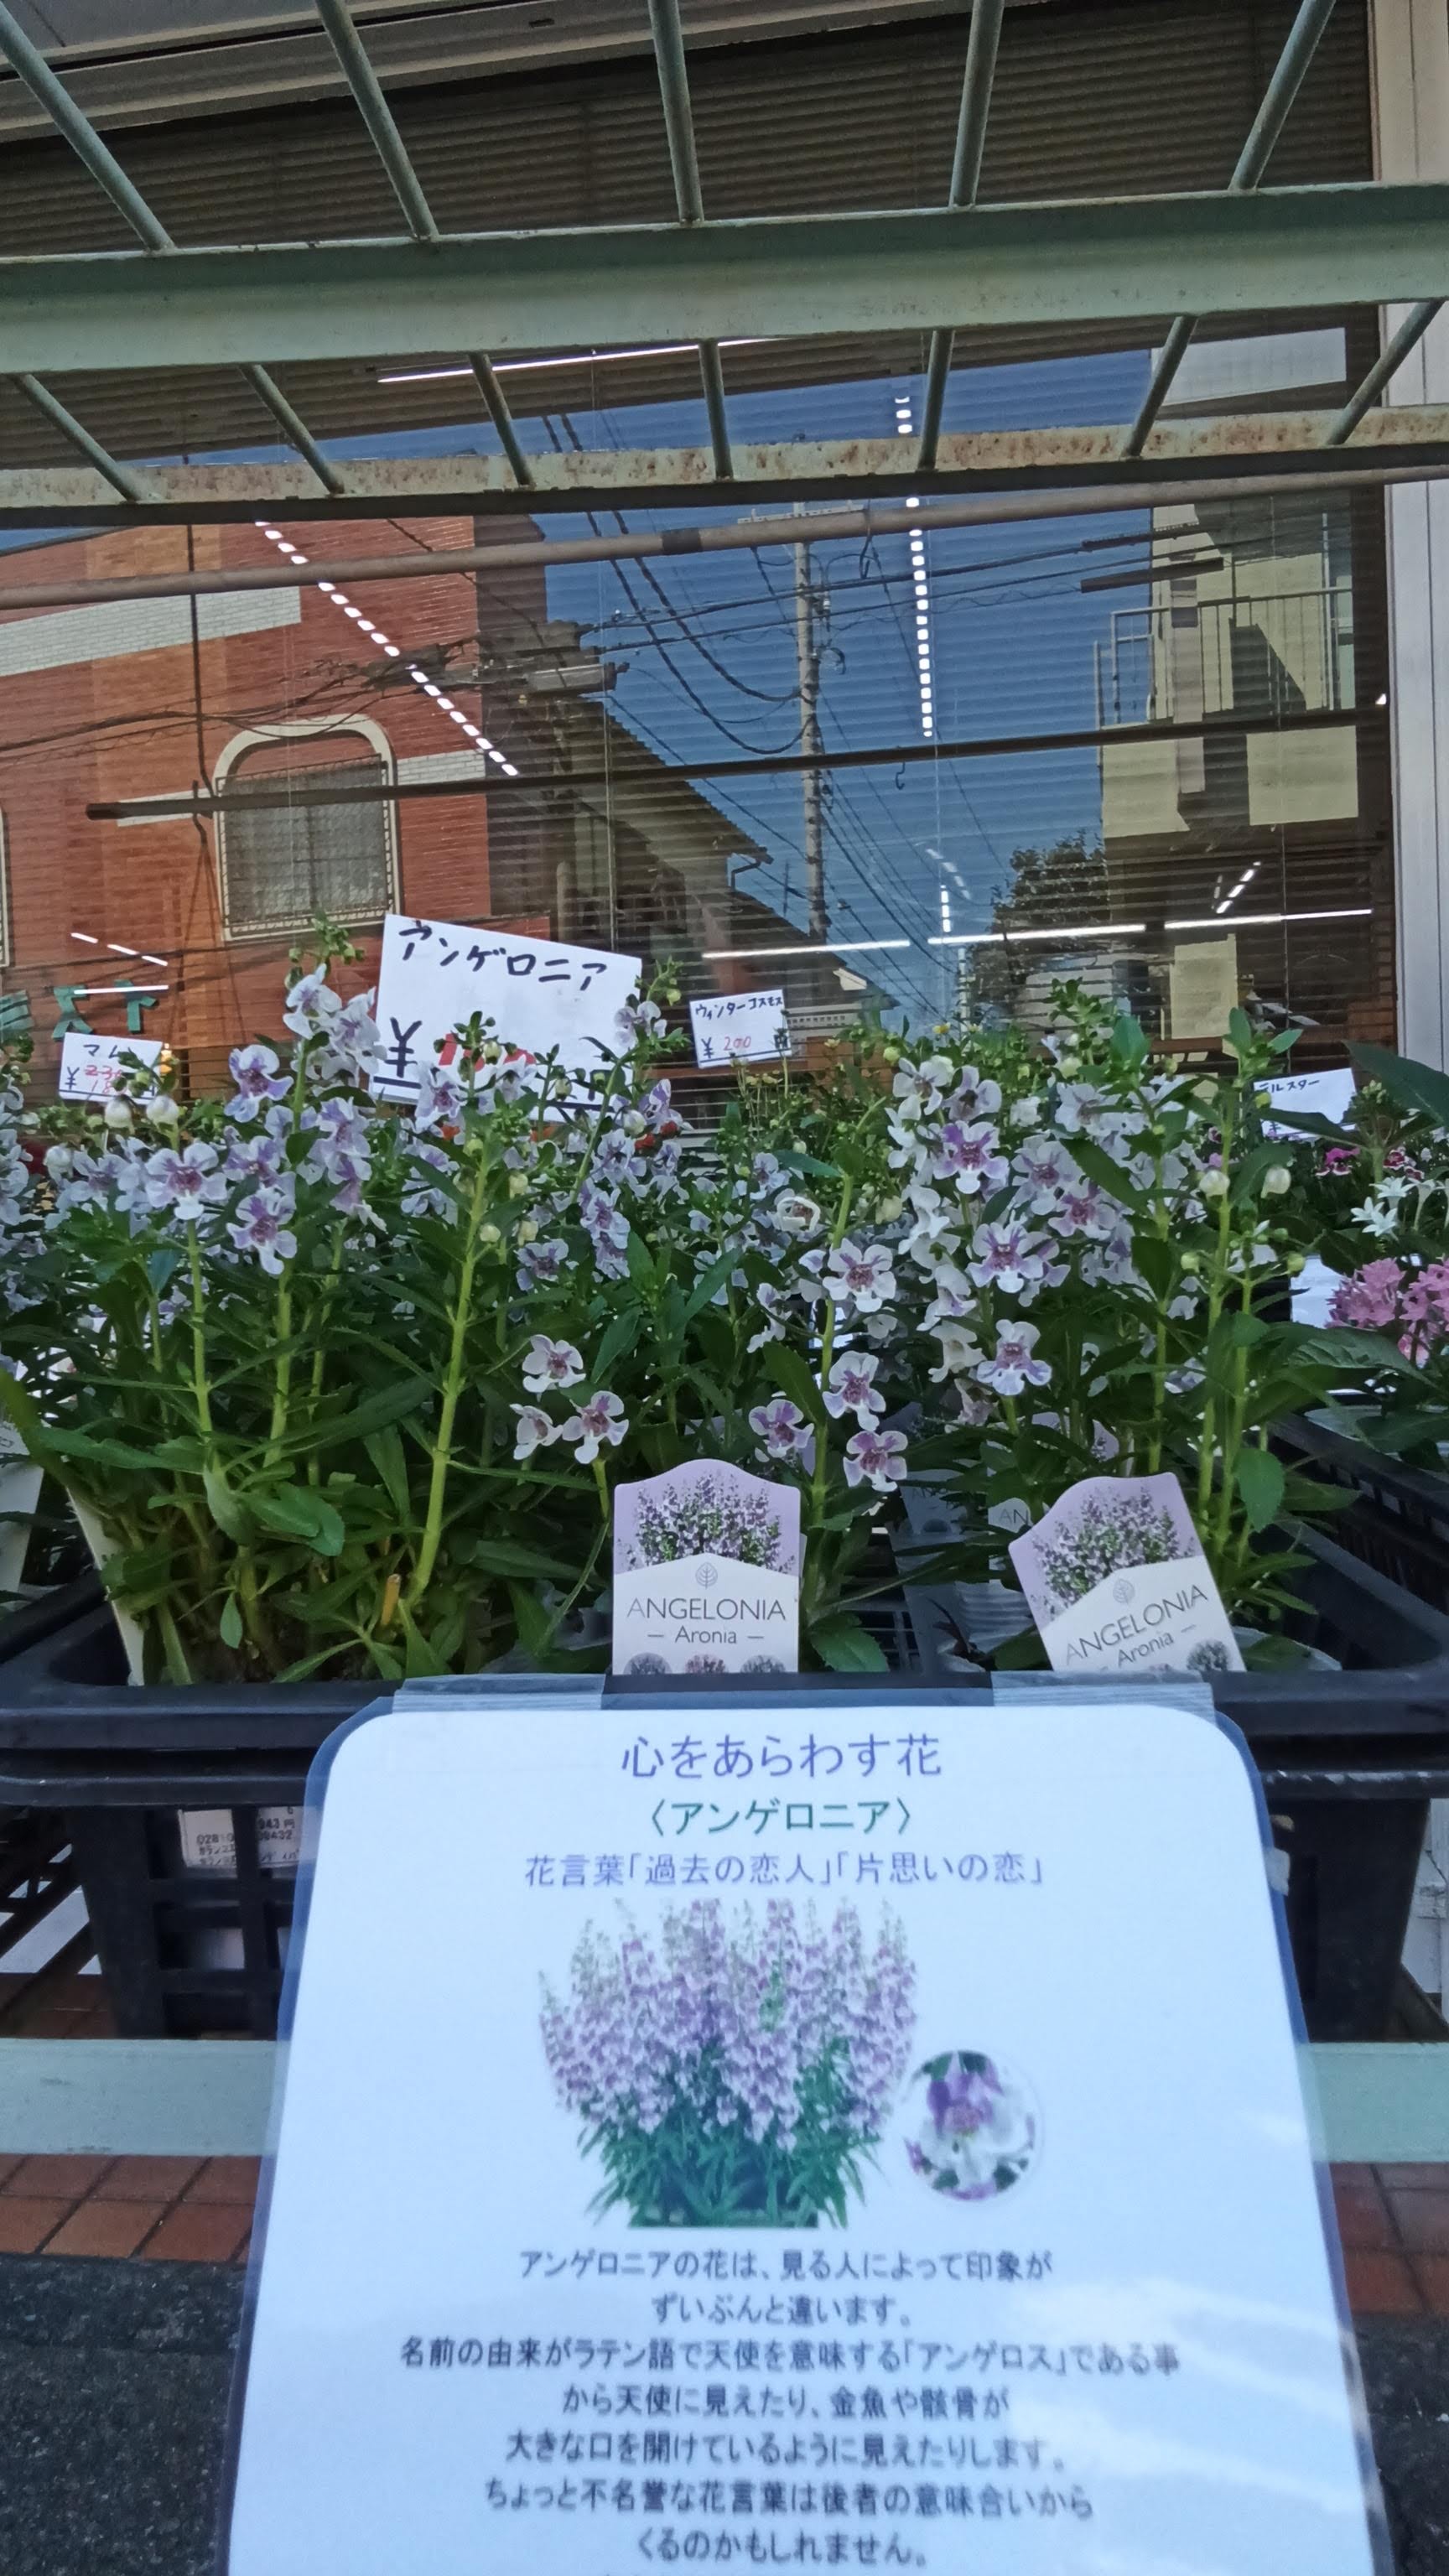 どろんこ作業所からのお知らせ 西東京市 どろんこ作業所手作り山 鉢花 今週入荷した花に しょうさんがパソコンでpopを作りました 特徴や花言葉をわかりやすく書きました とのことです 花を見る際はpopにも注目してみてくださいね Cちゃん